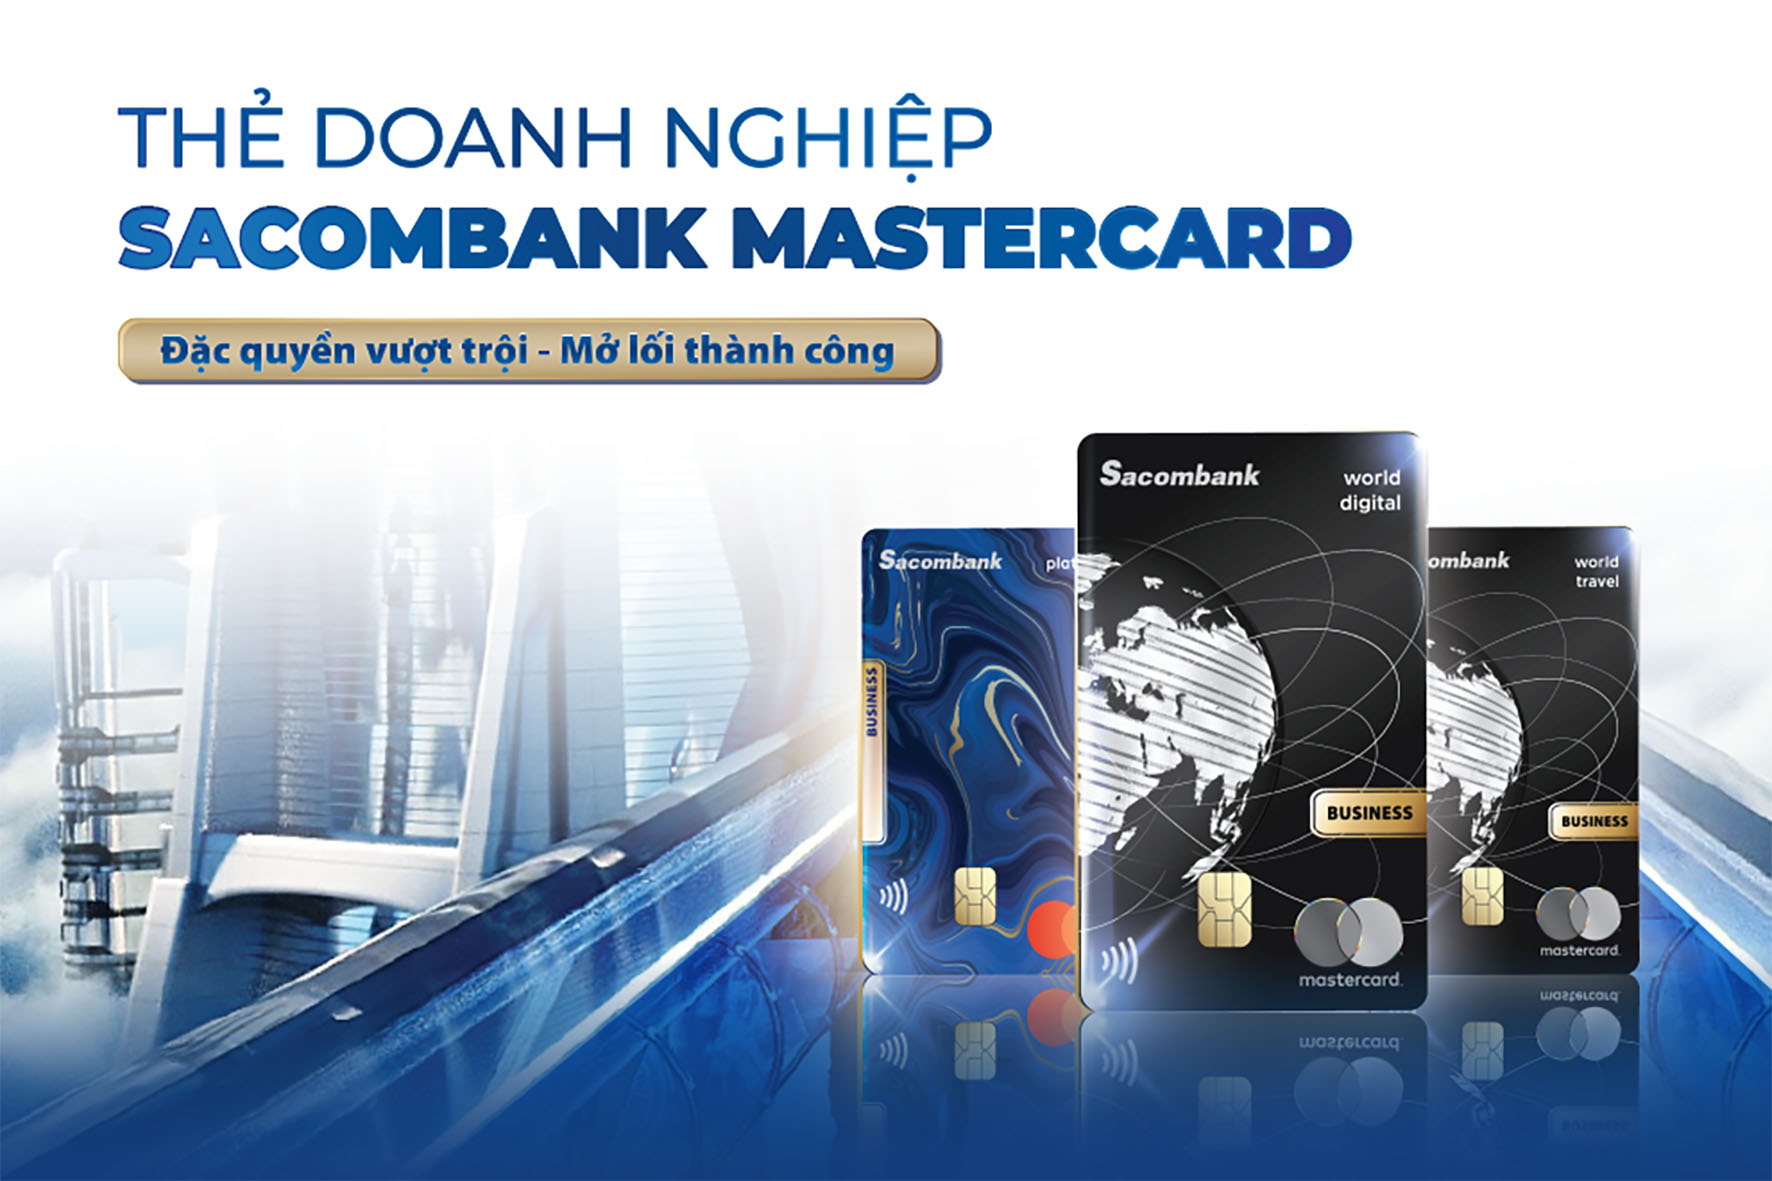 Đặc quyền vượt trội - mở lối thành công với thẻ doanh nghiệp Sacombank Mastercard - Ảnh 1.